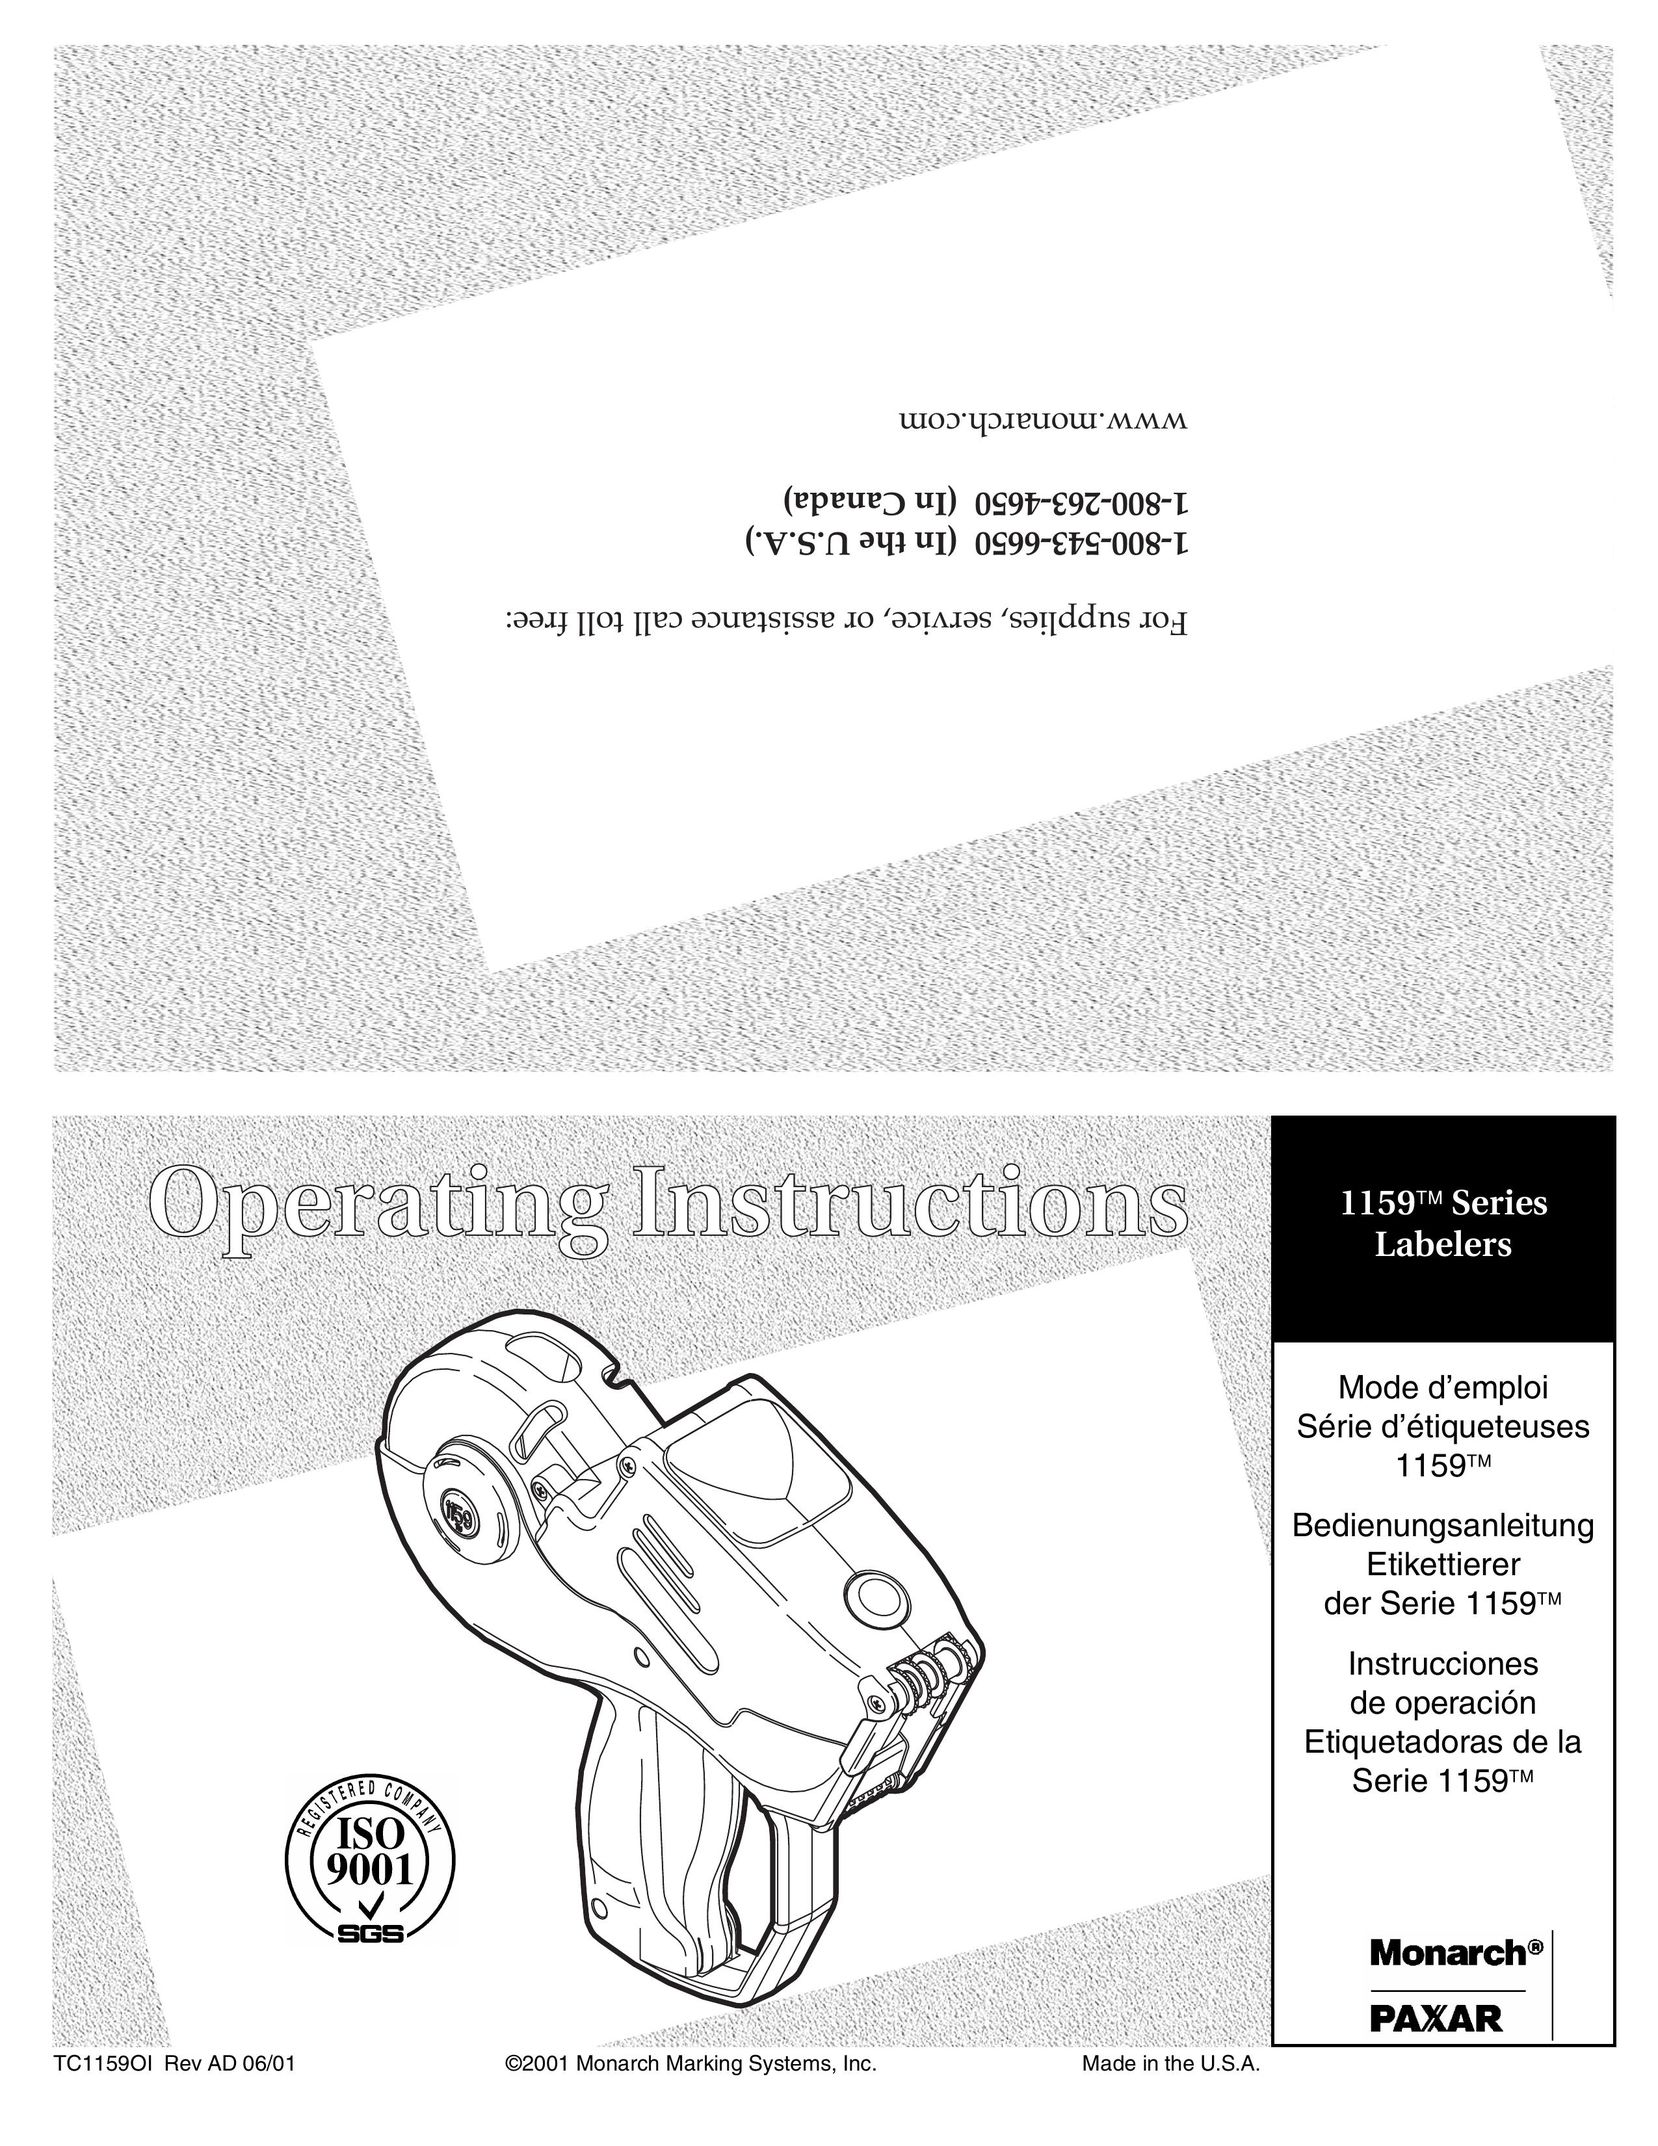 Paxar 1159 Series Printer User Manual